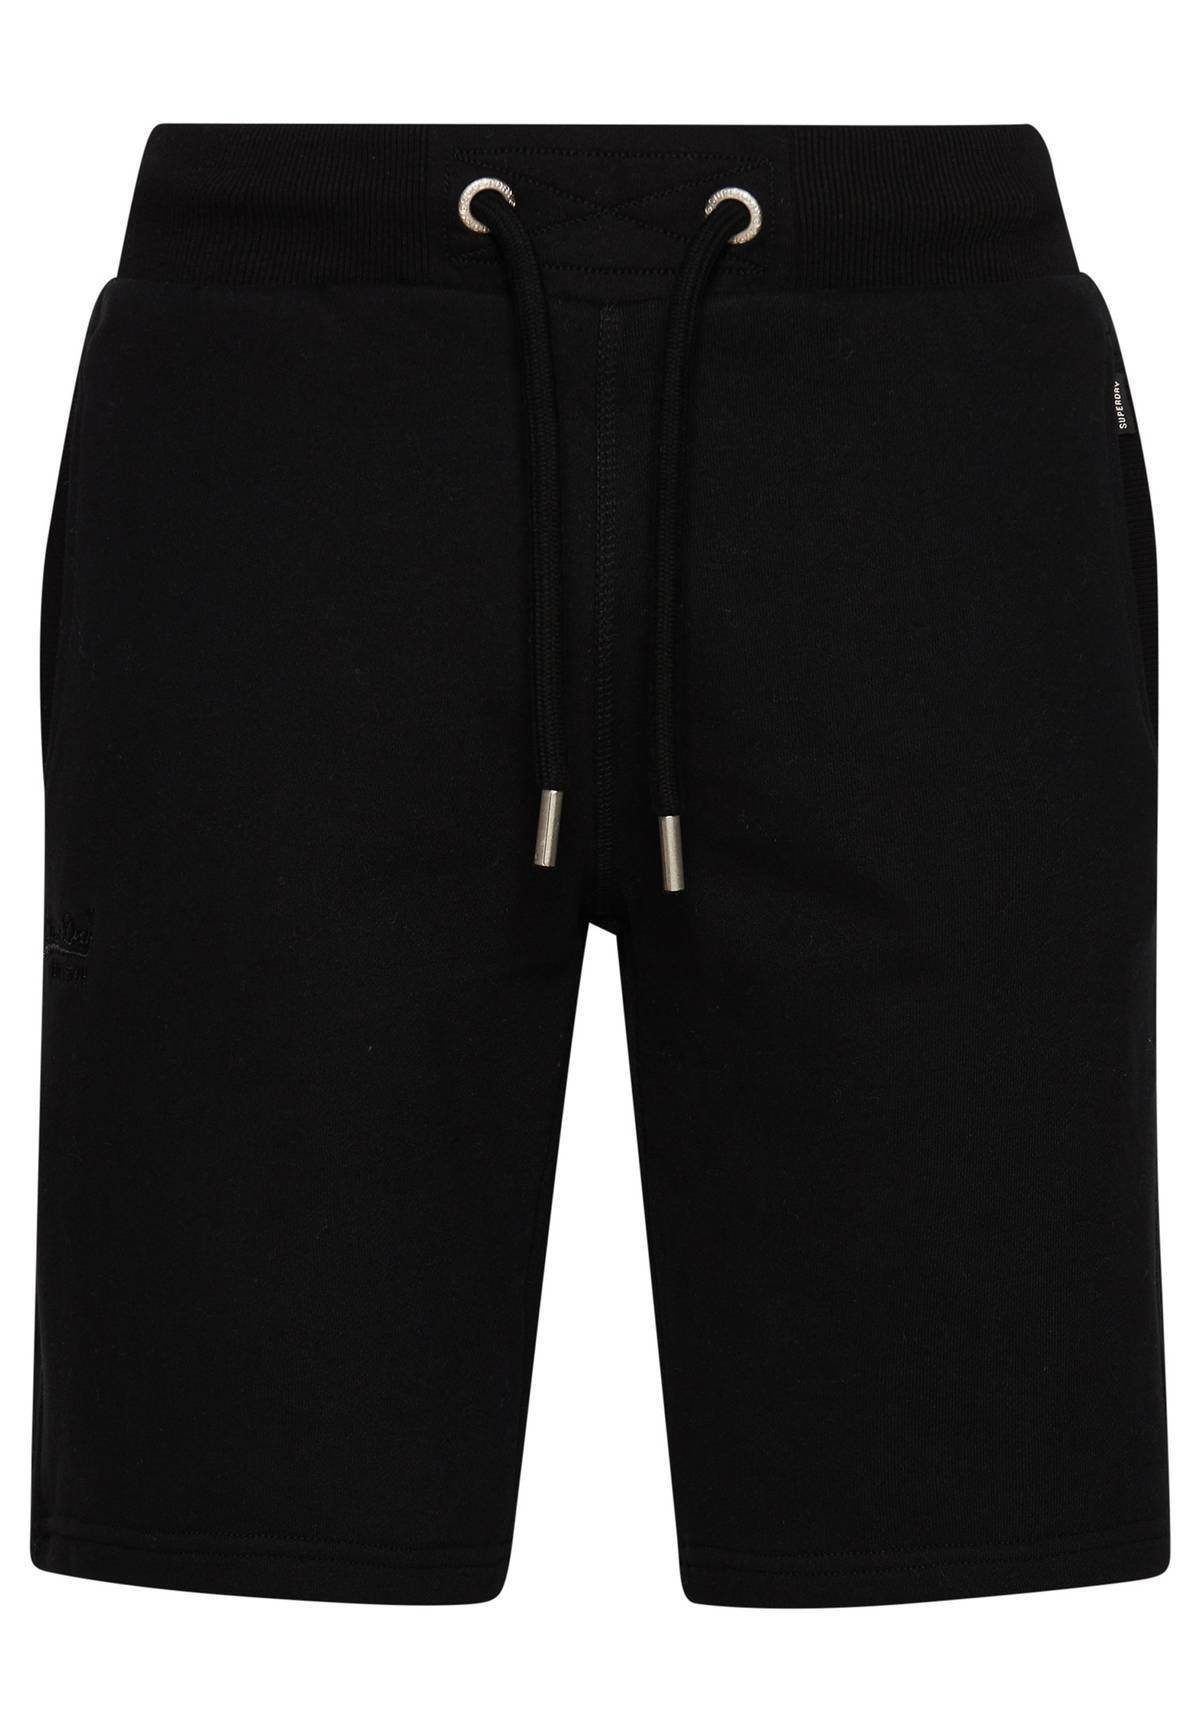 Superdry Sweatshorts Herren Jersey-Shorts - Loungewear, Jogginghose Schwarz